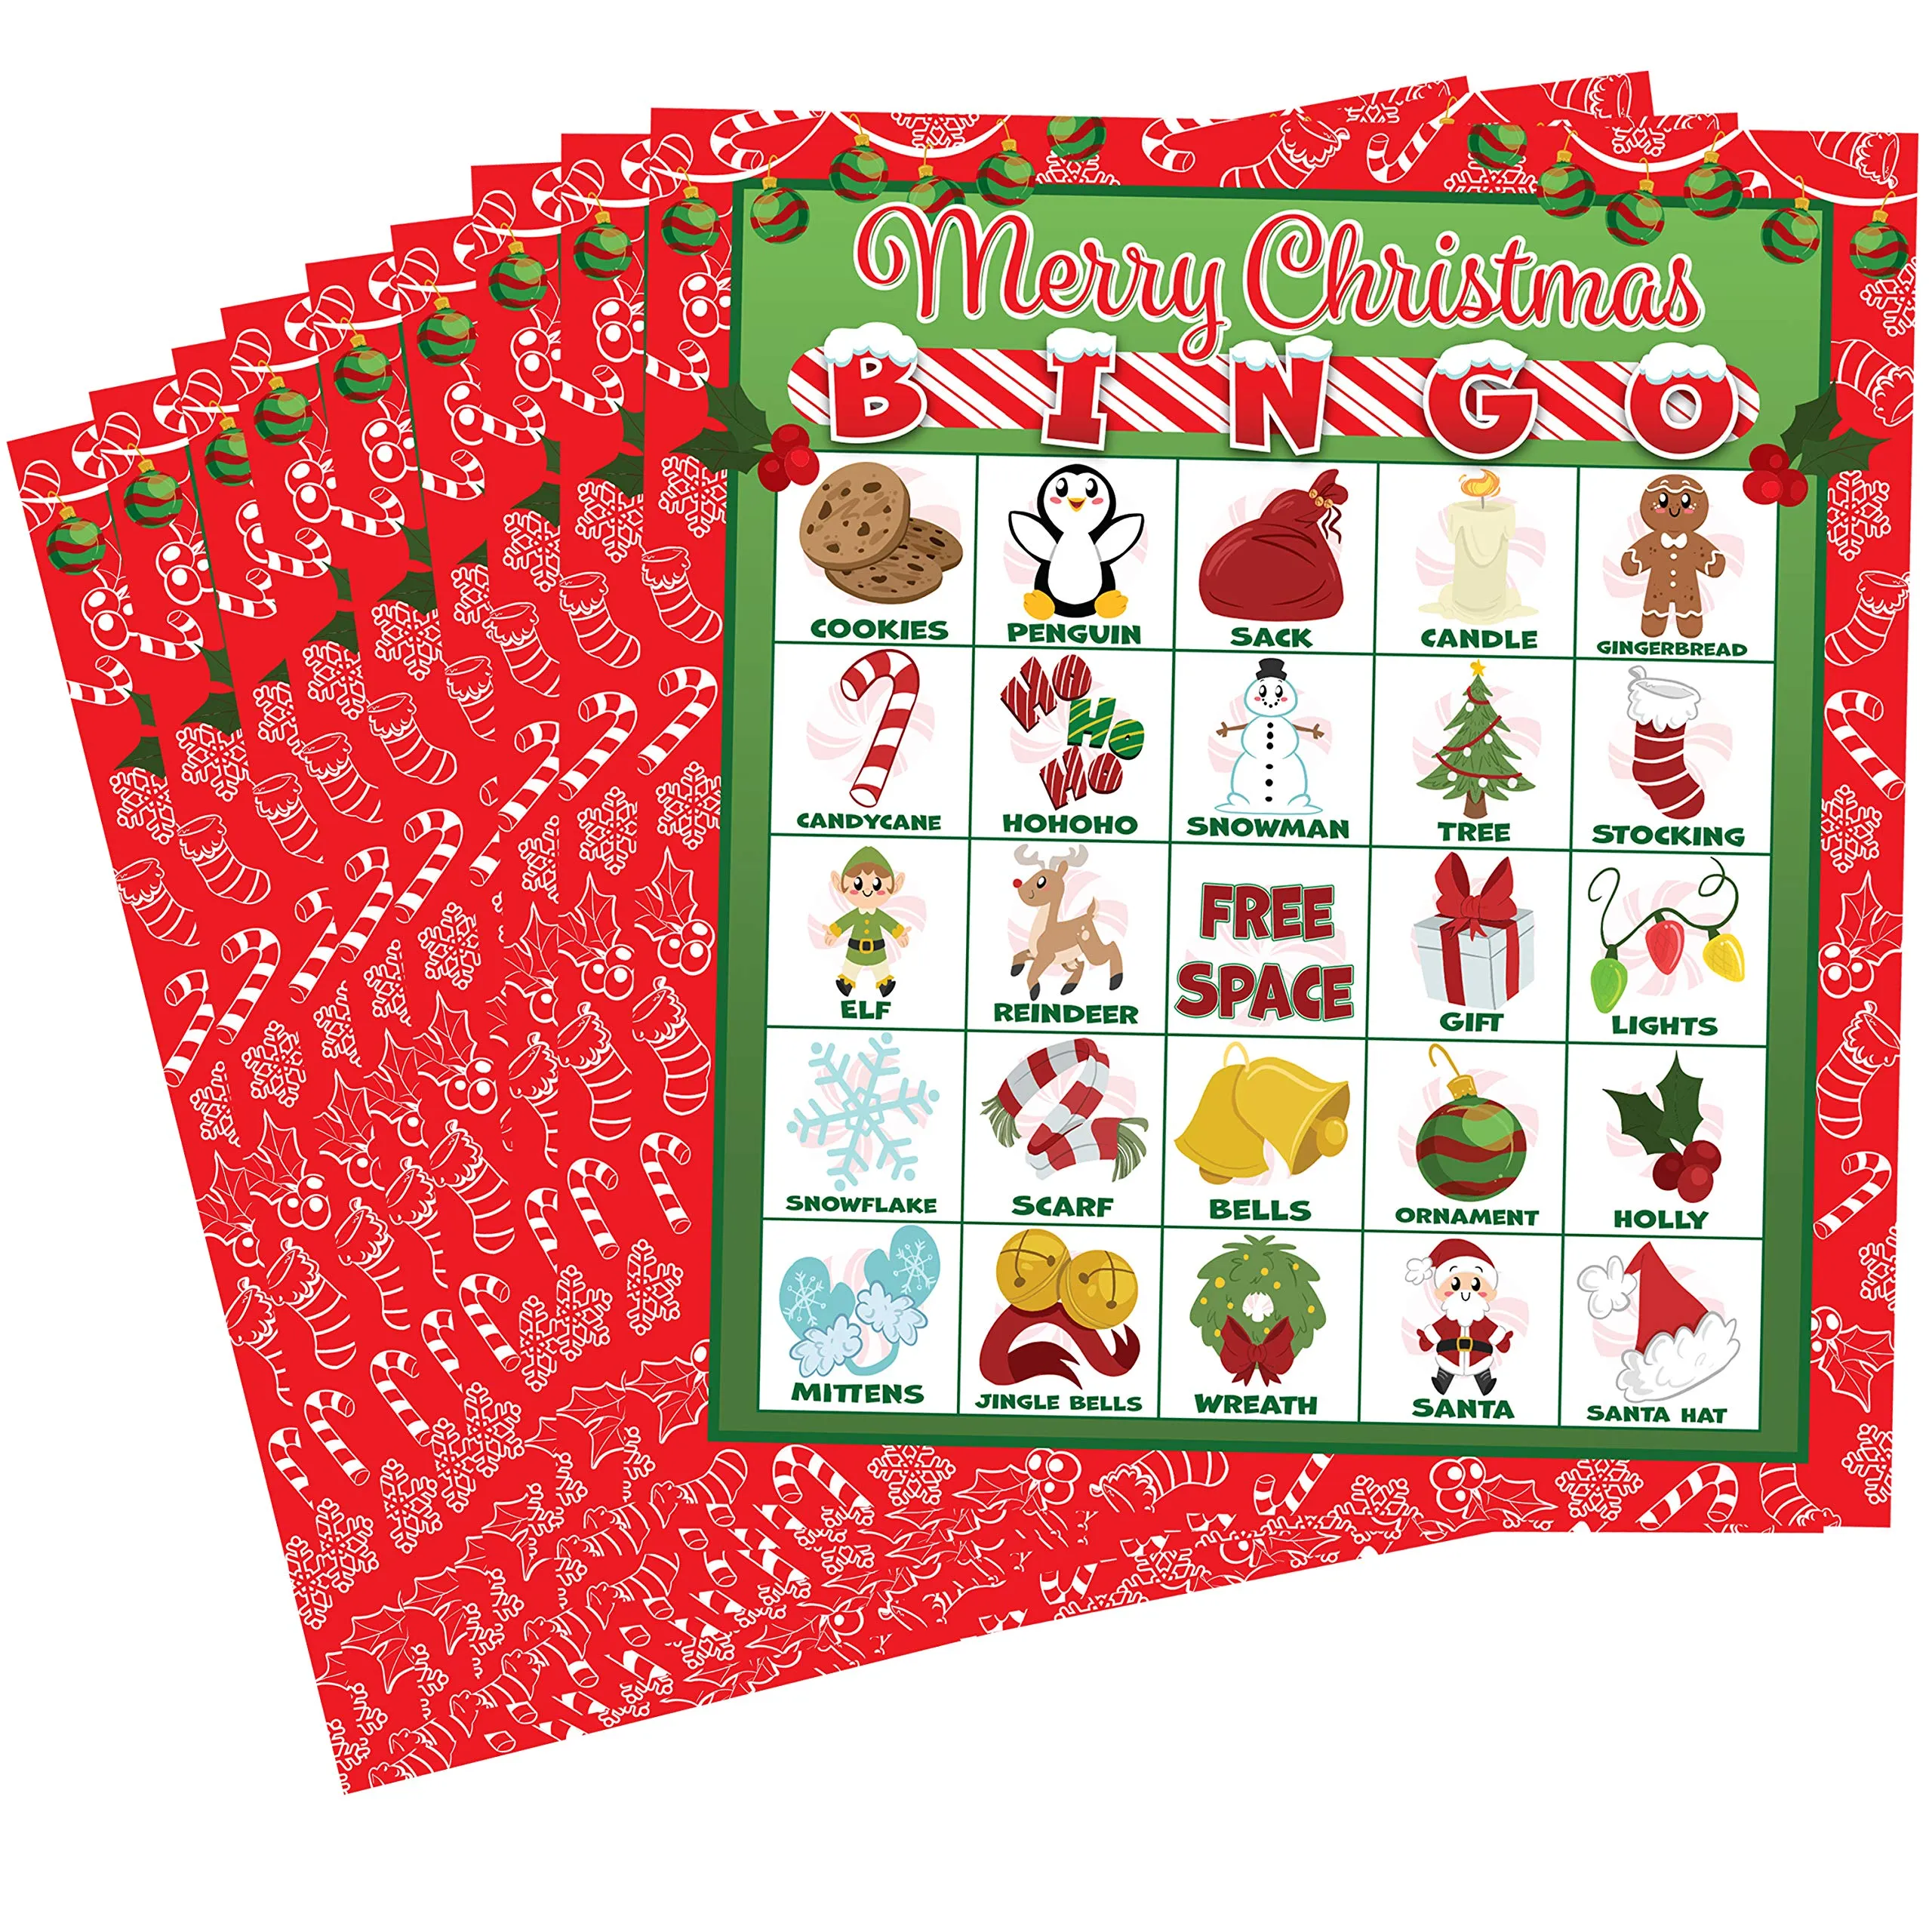 Bingo Supplies, Bingo Paper, Bingo Daubers, Bingo Equipment, Bingo Bags,  Bingo Gifts